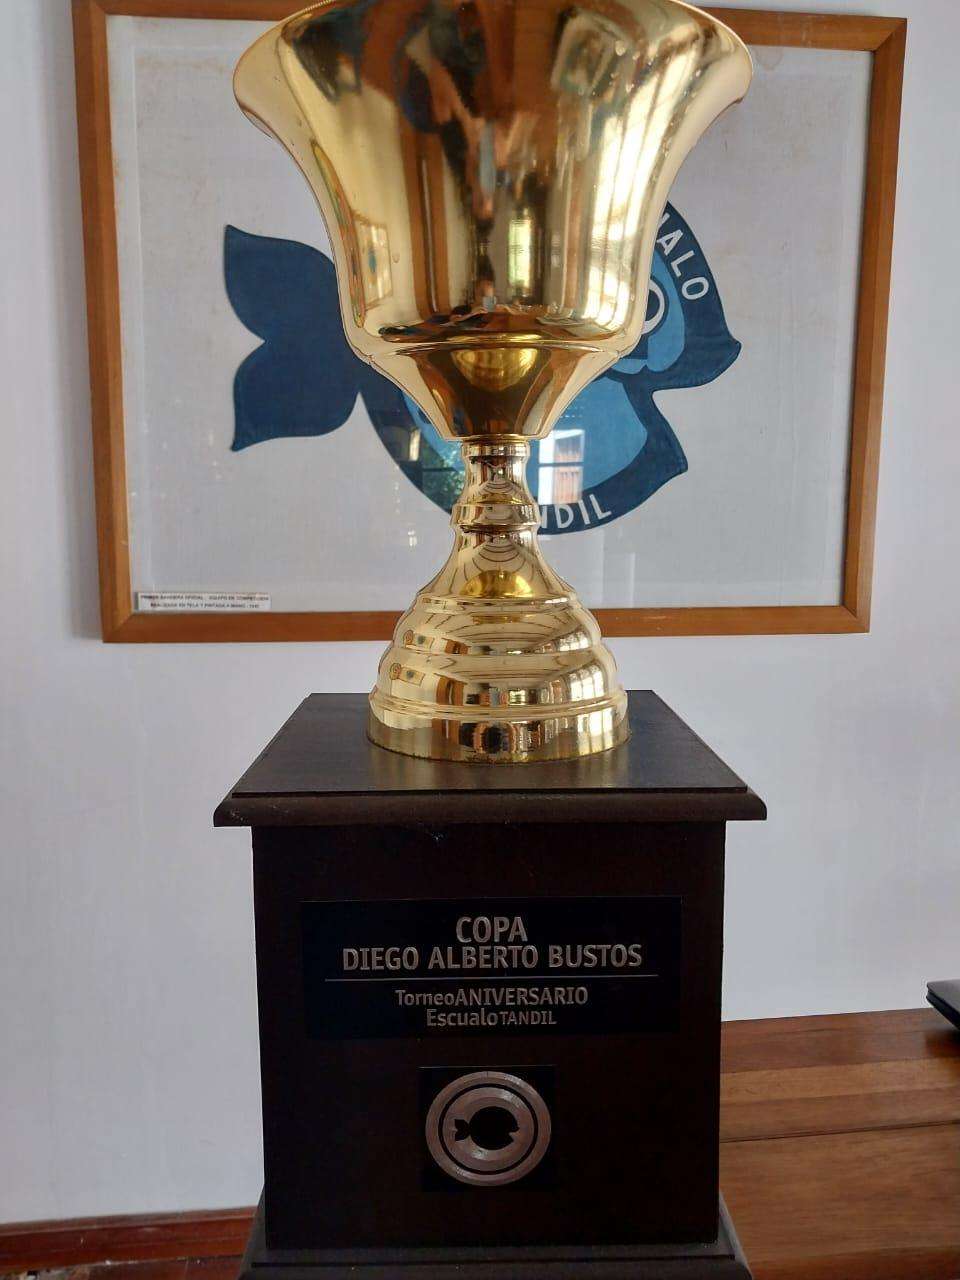 La Copa Diego Alberto Bustos.